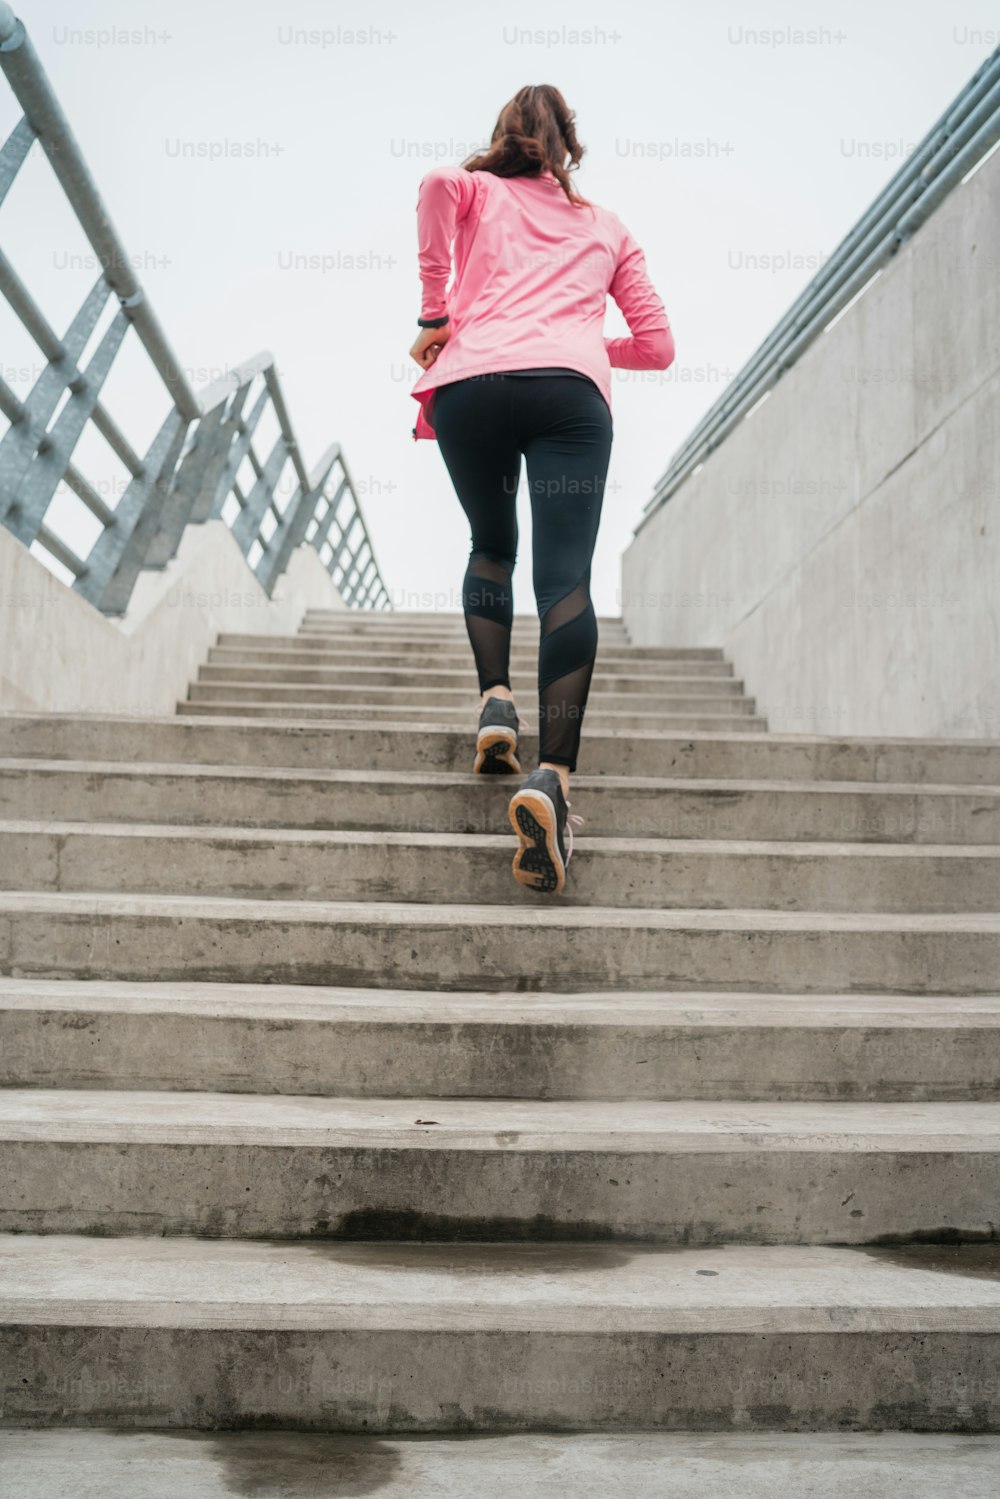 Ritratto di una donna sportiva che corre sulle scale all'aperto. Concetti di fitness, sport e stile di vita sano.